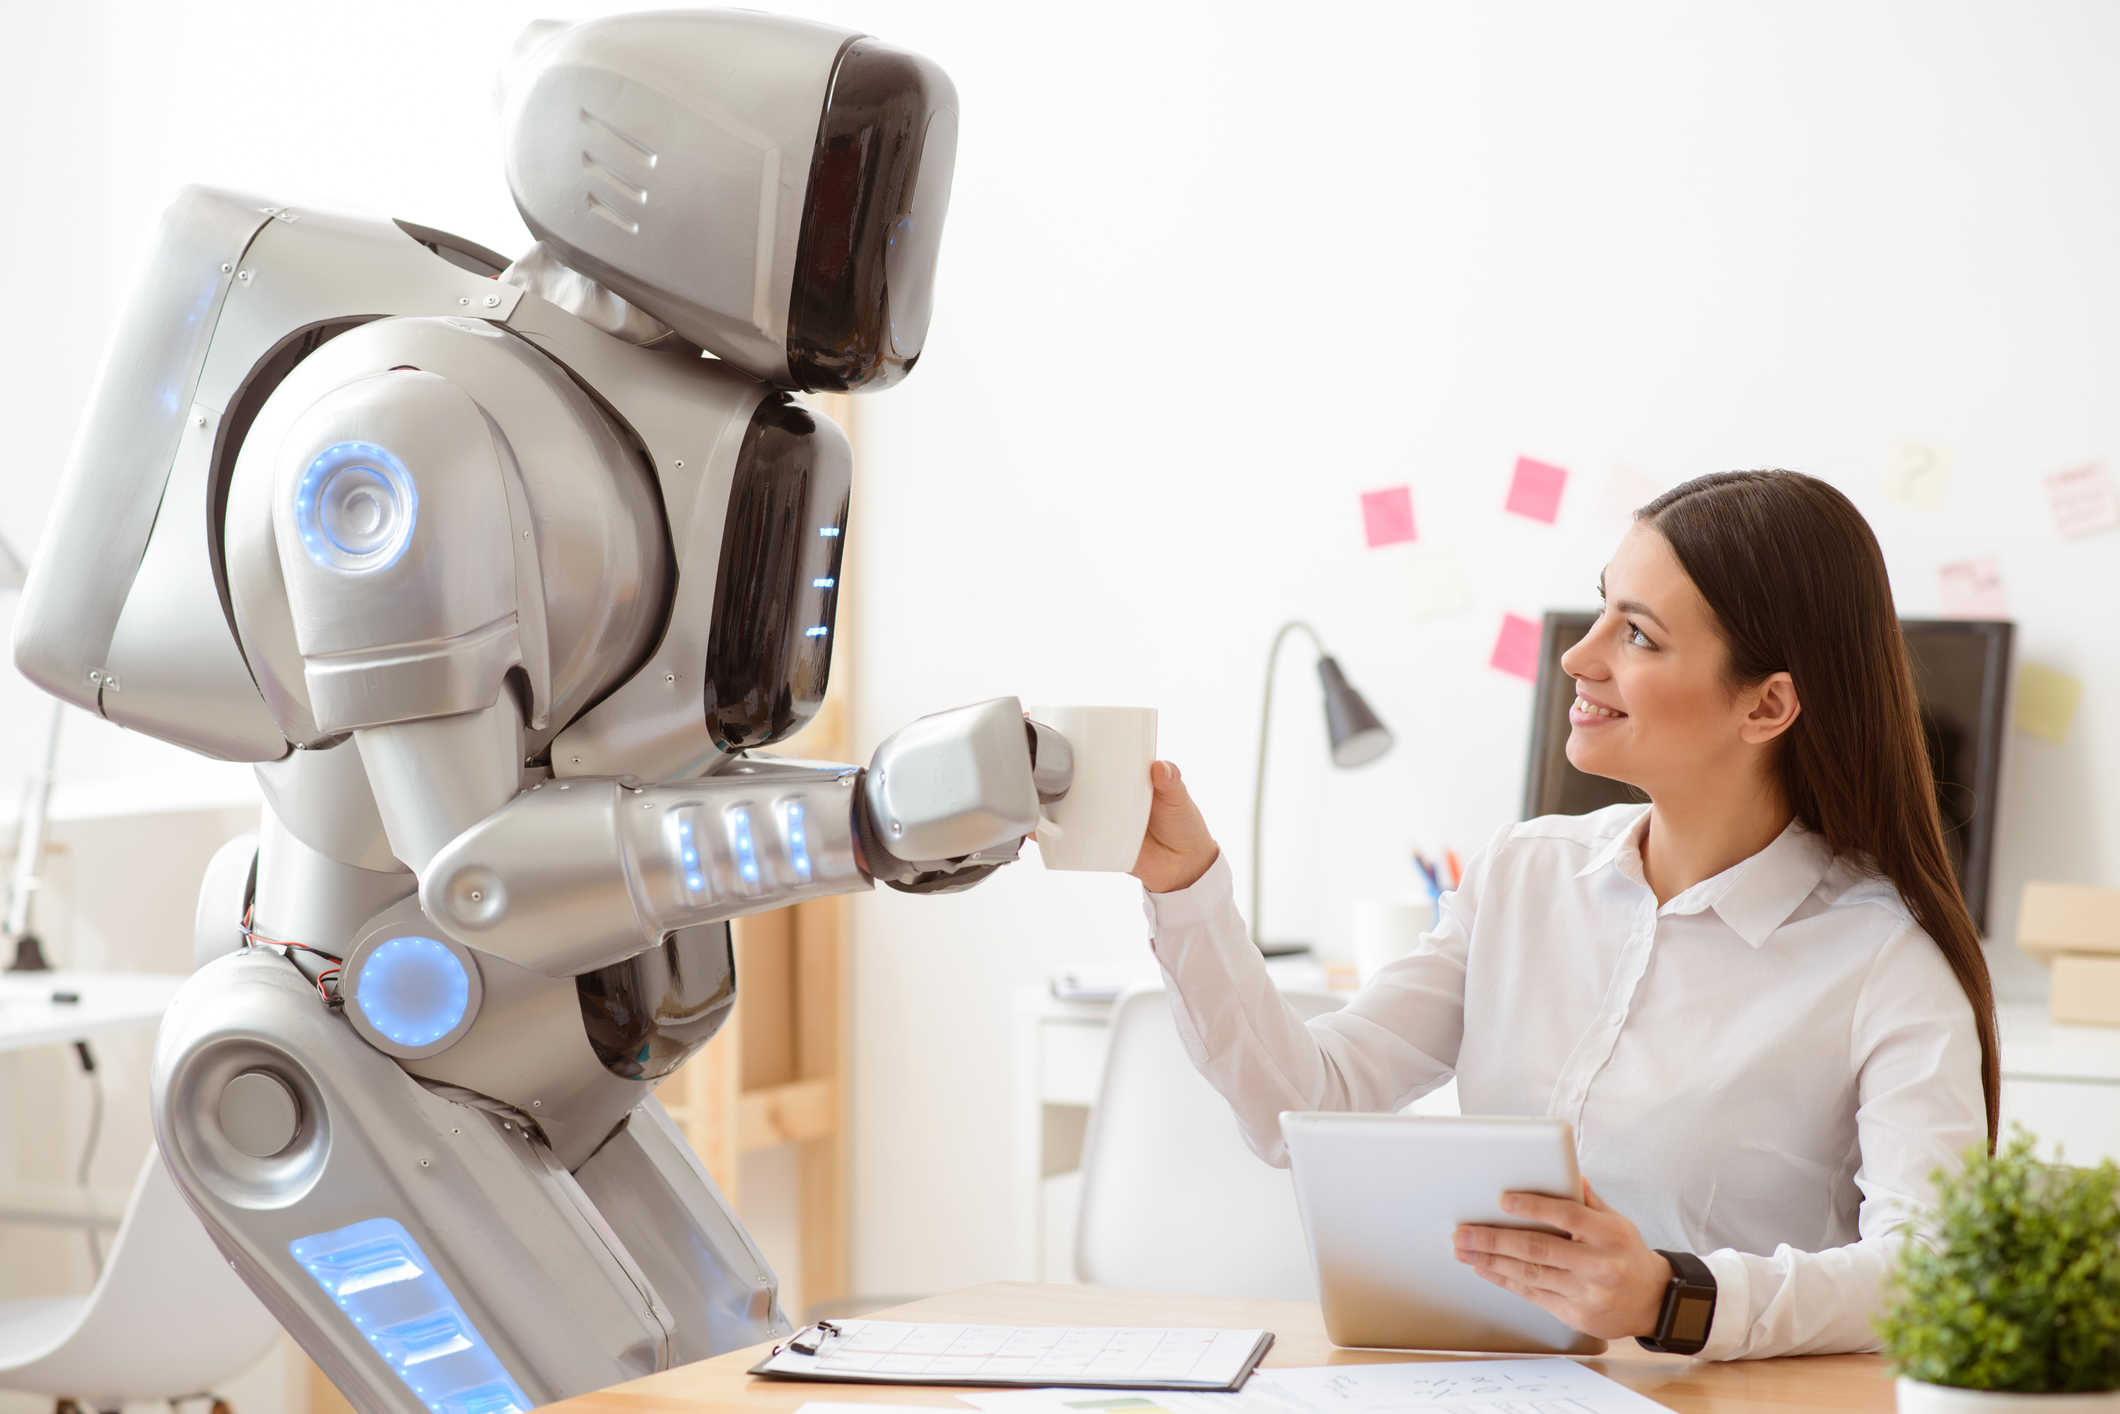 Попроси робота. Робот человек. Роботы в будущем. Робот с искусственным интеллектом. Роботы заменят людей.